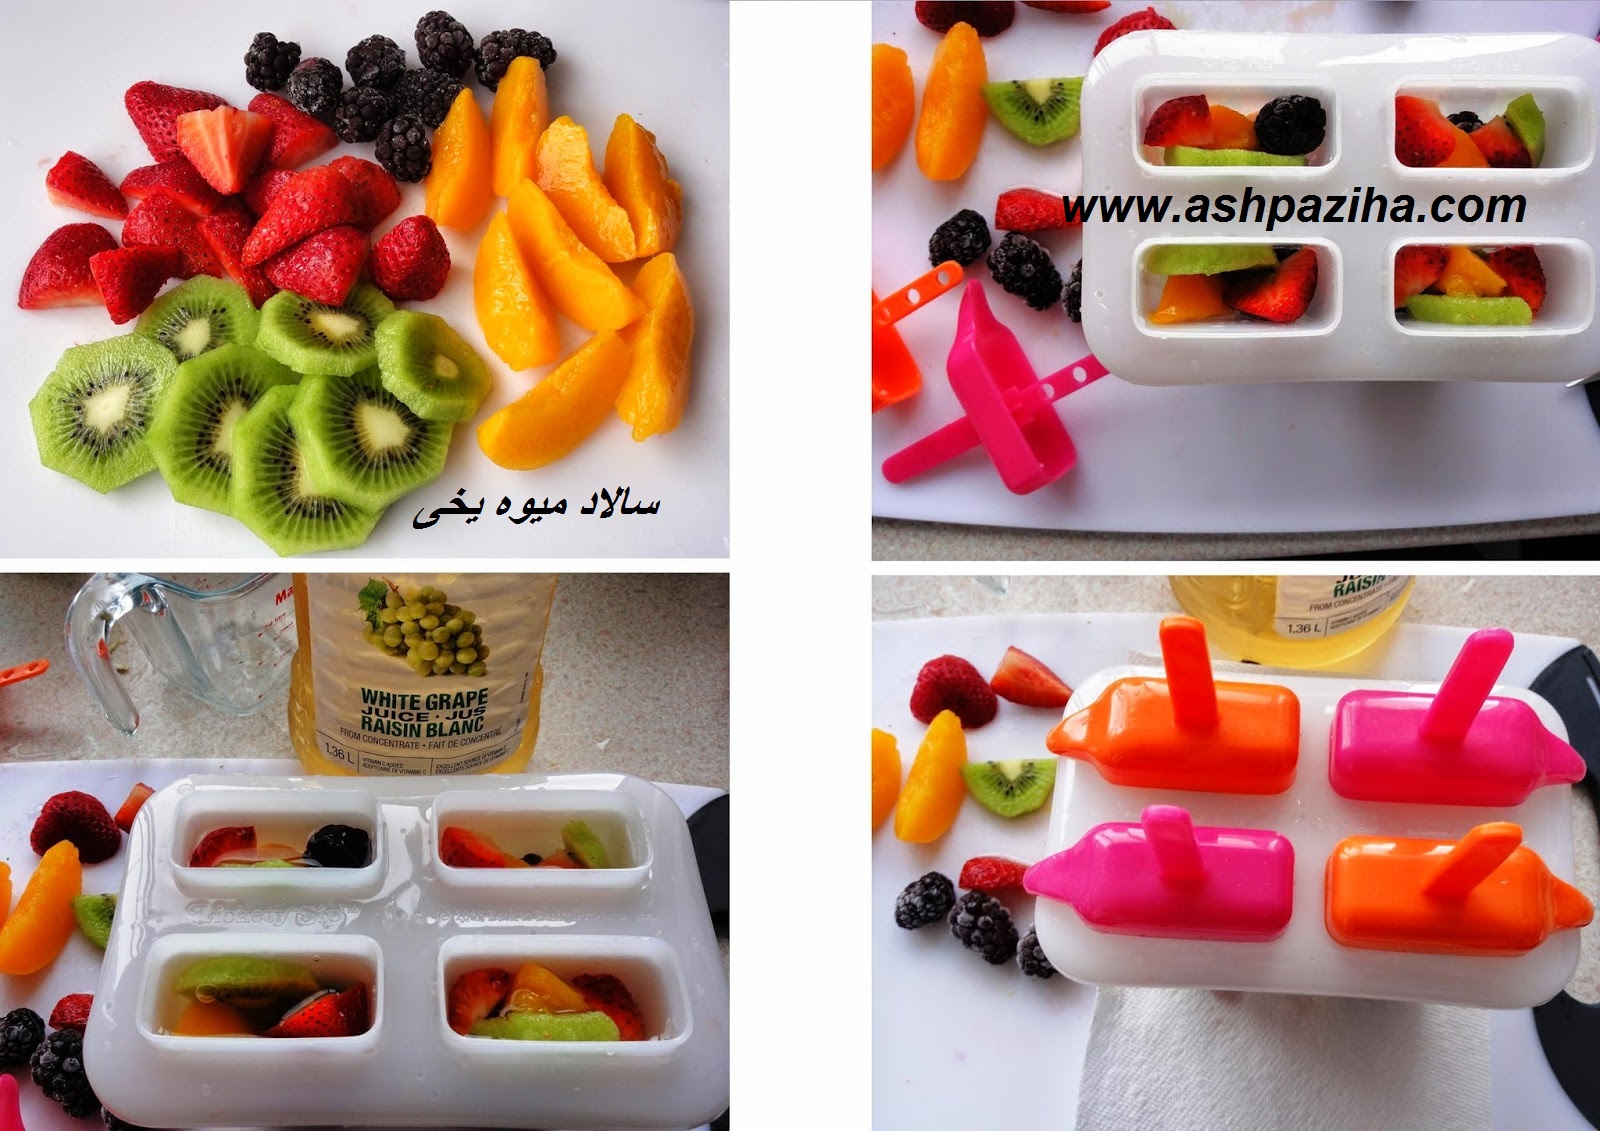 Mode - preparation - salads - fruit - of - ice - Training - image (3)